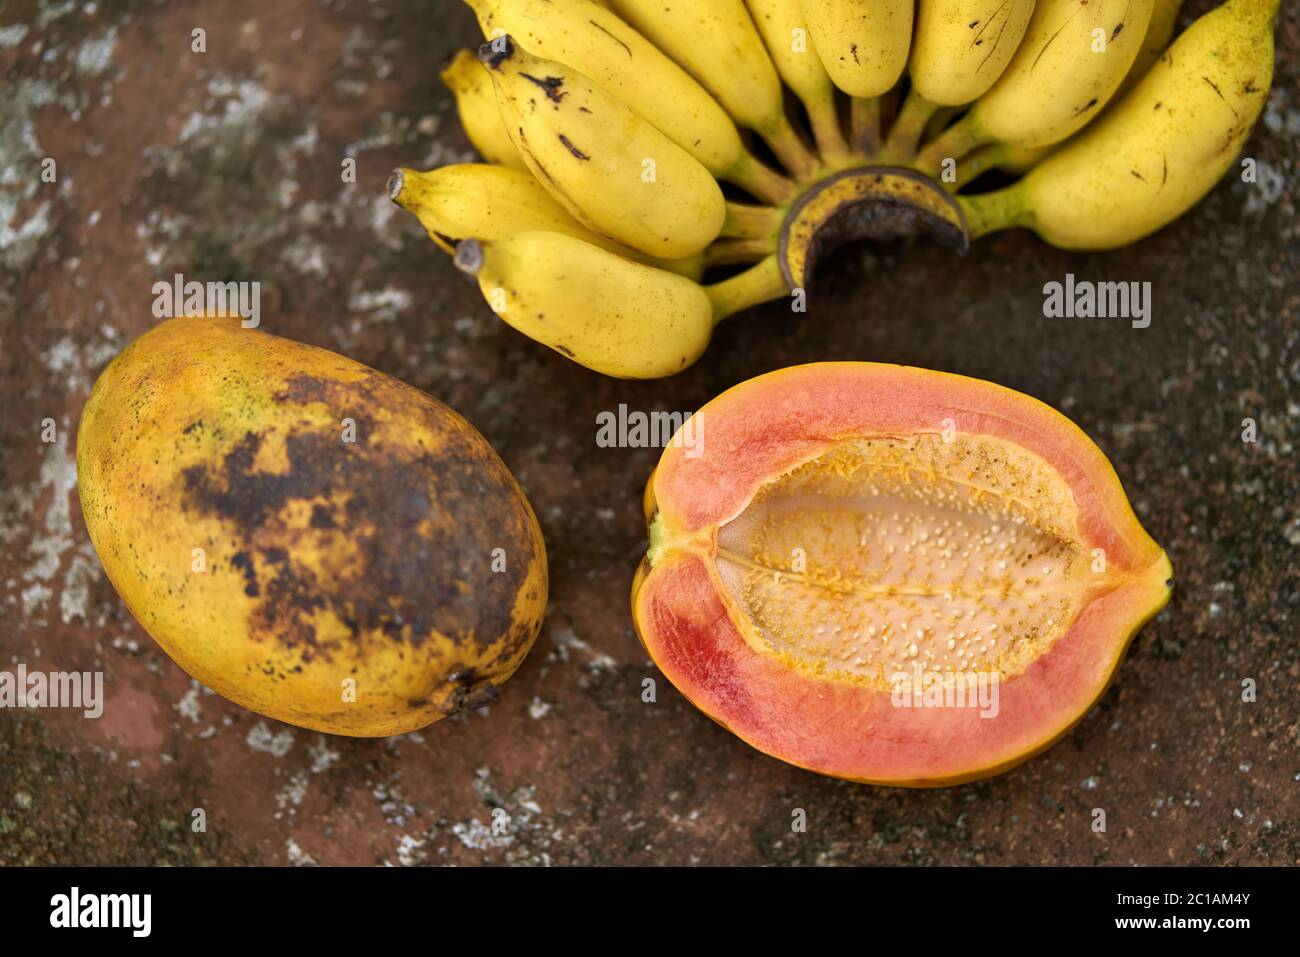 Colorful papayas and bananas Stock Photo